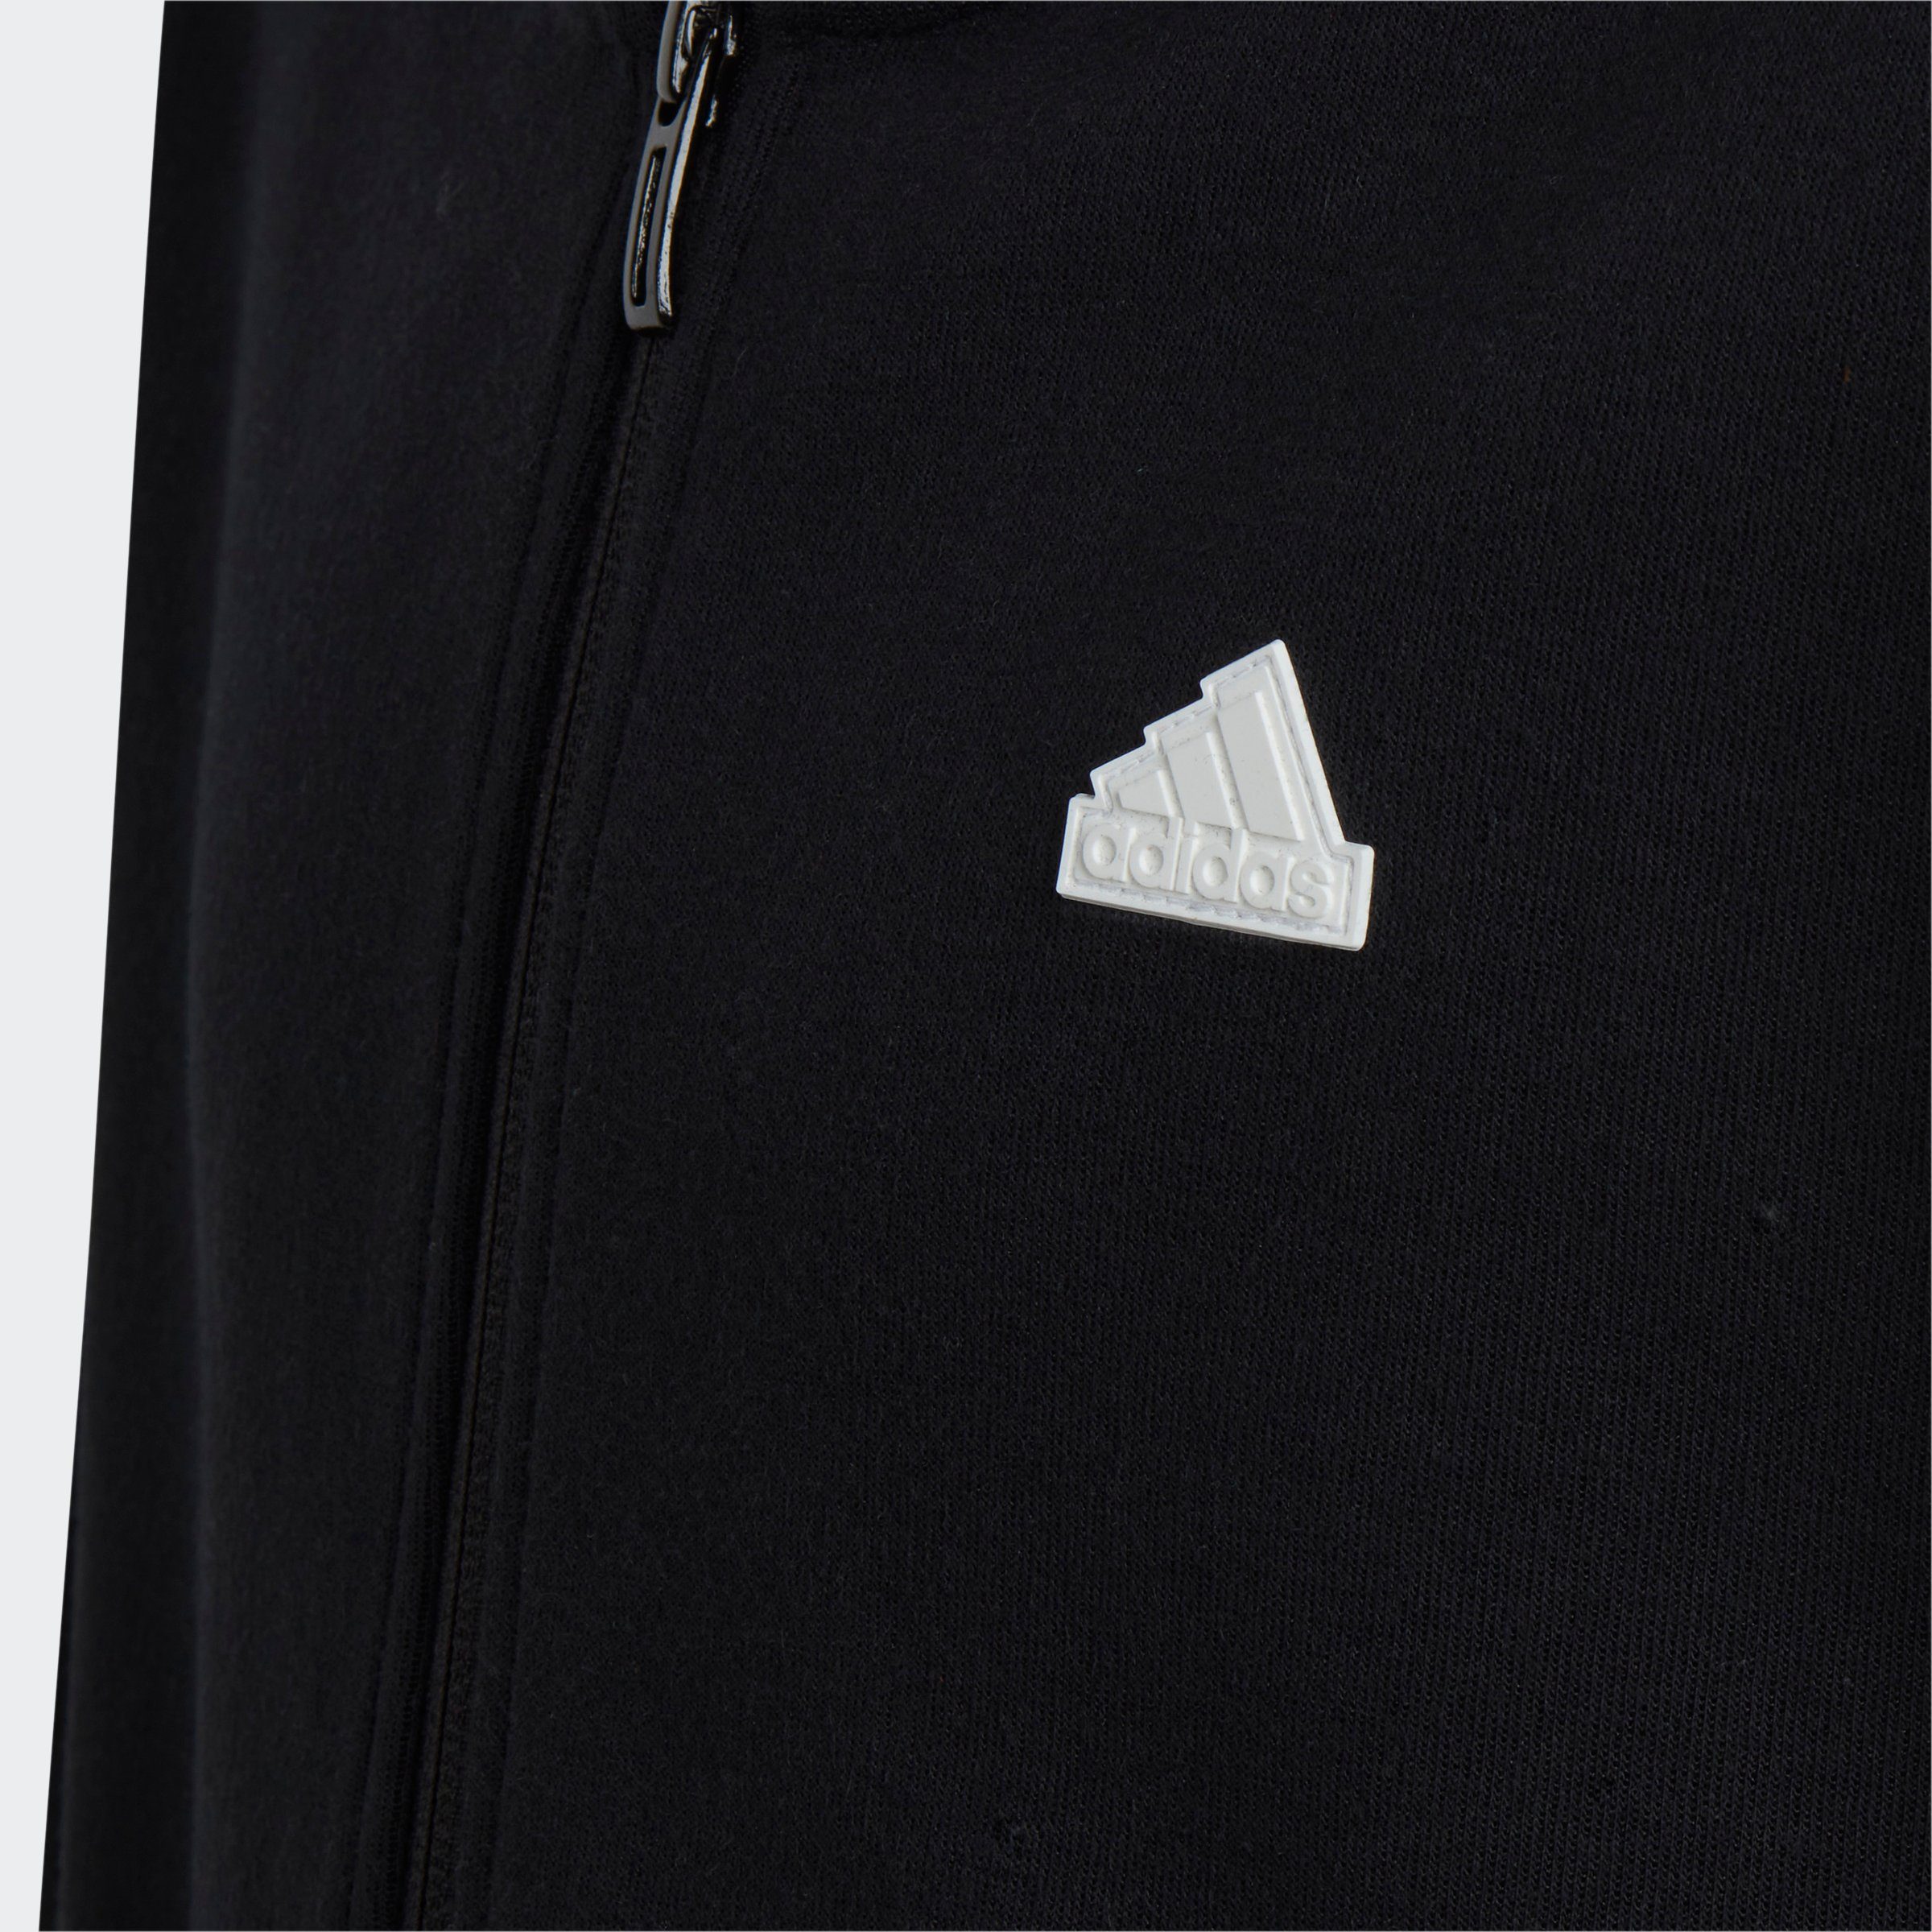 black-white Sportswear Kapuzensweatshirt KAPUZENJACKE FUTURE adidas 3STREIFEN ICONS